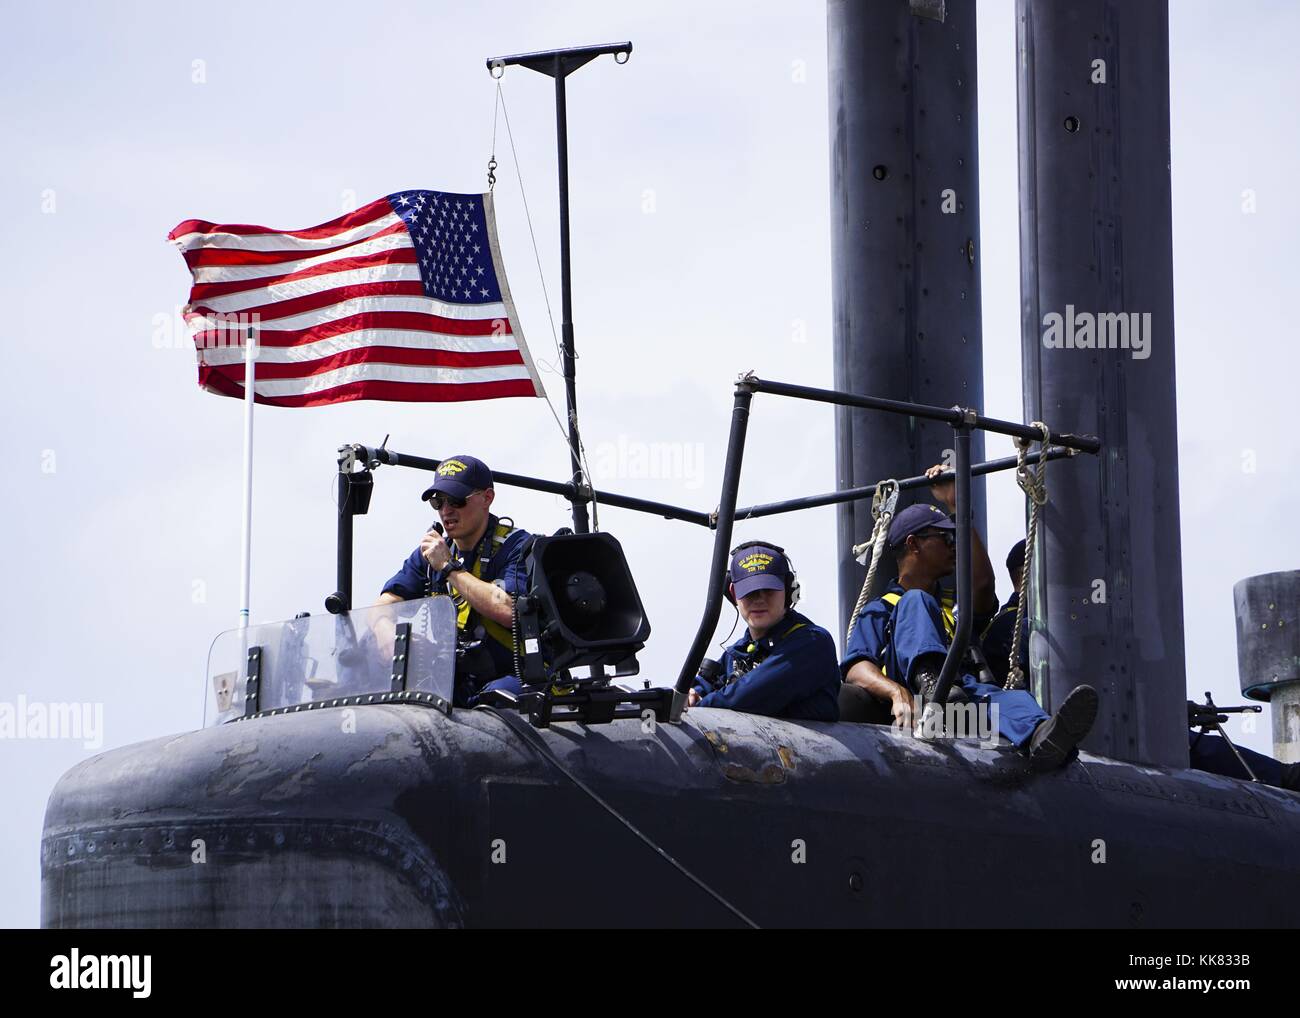 Velisti assegnati al Los Angeles-class attack submarine USS Albuquerque SSN 706 stand guarda come la barca parte Diego Garcia. Immagine cortesia Chief Fire tecnico di controllo Jeremy lordo/US Navy, 2015. Foto Stock